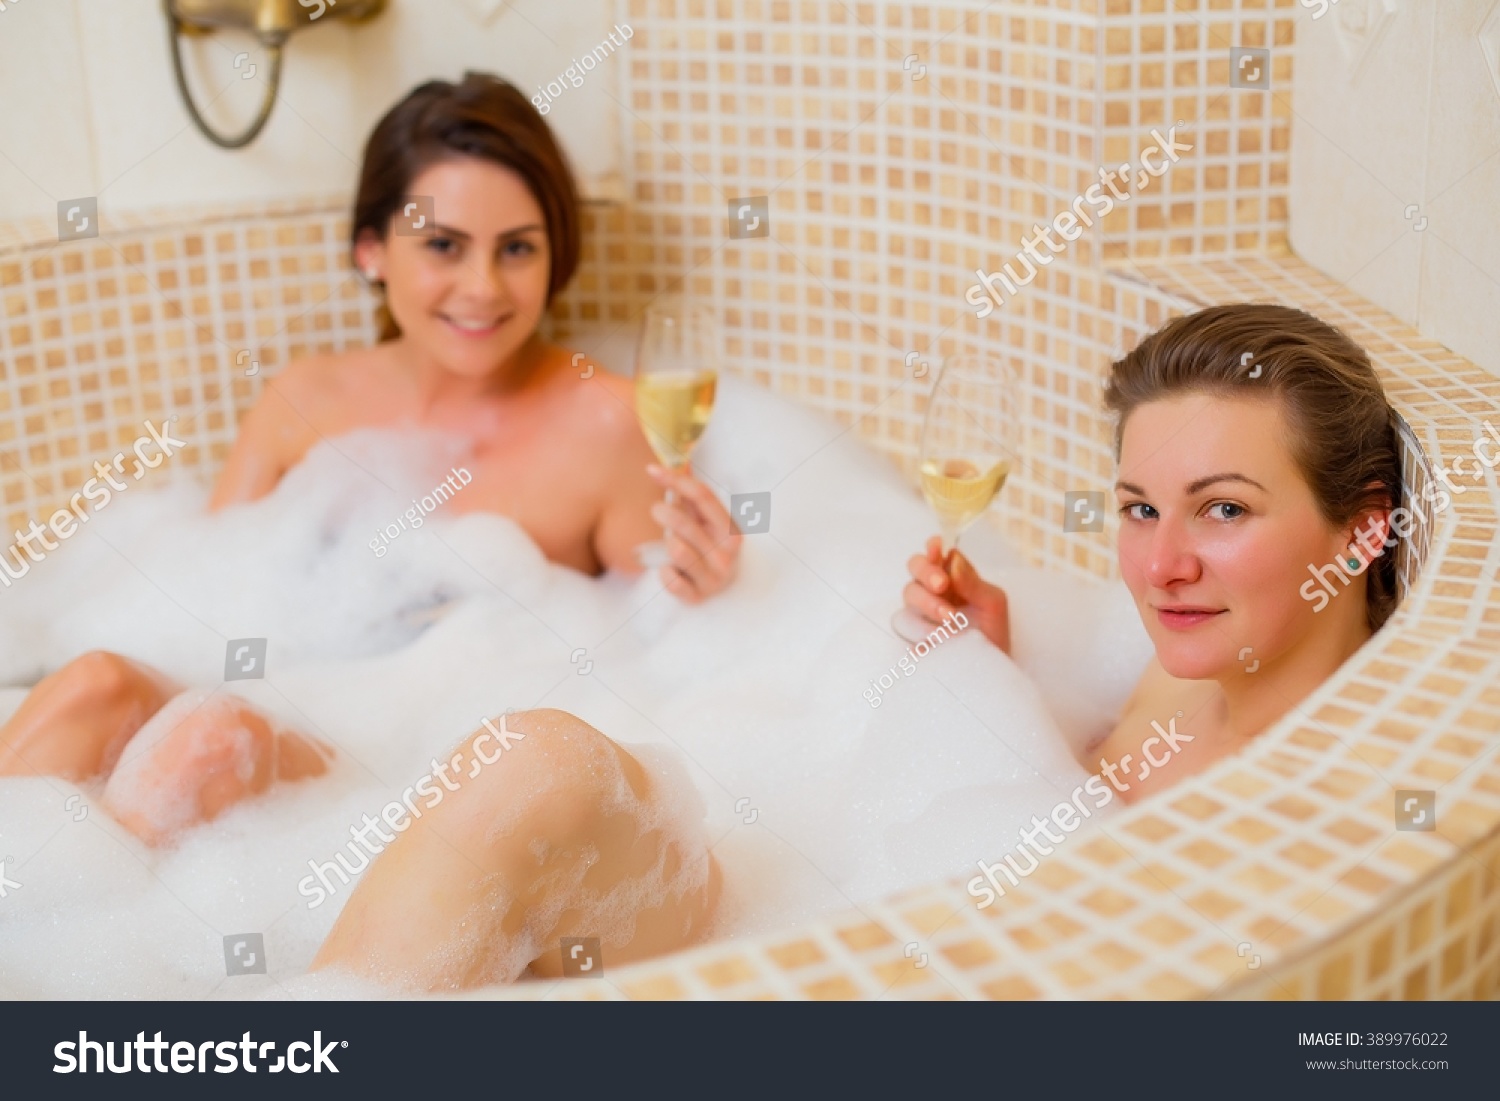 Lesbian In The Tub